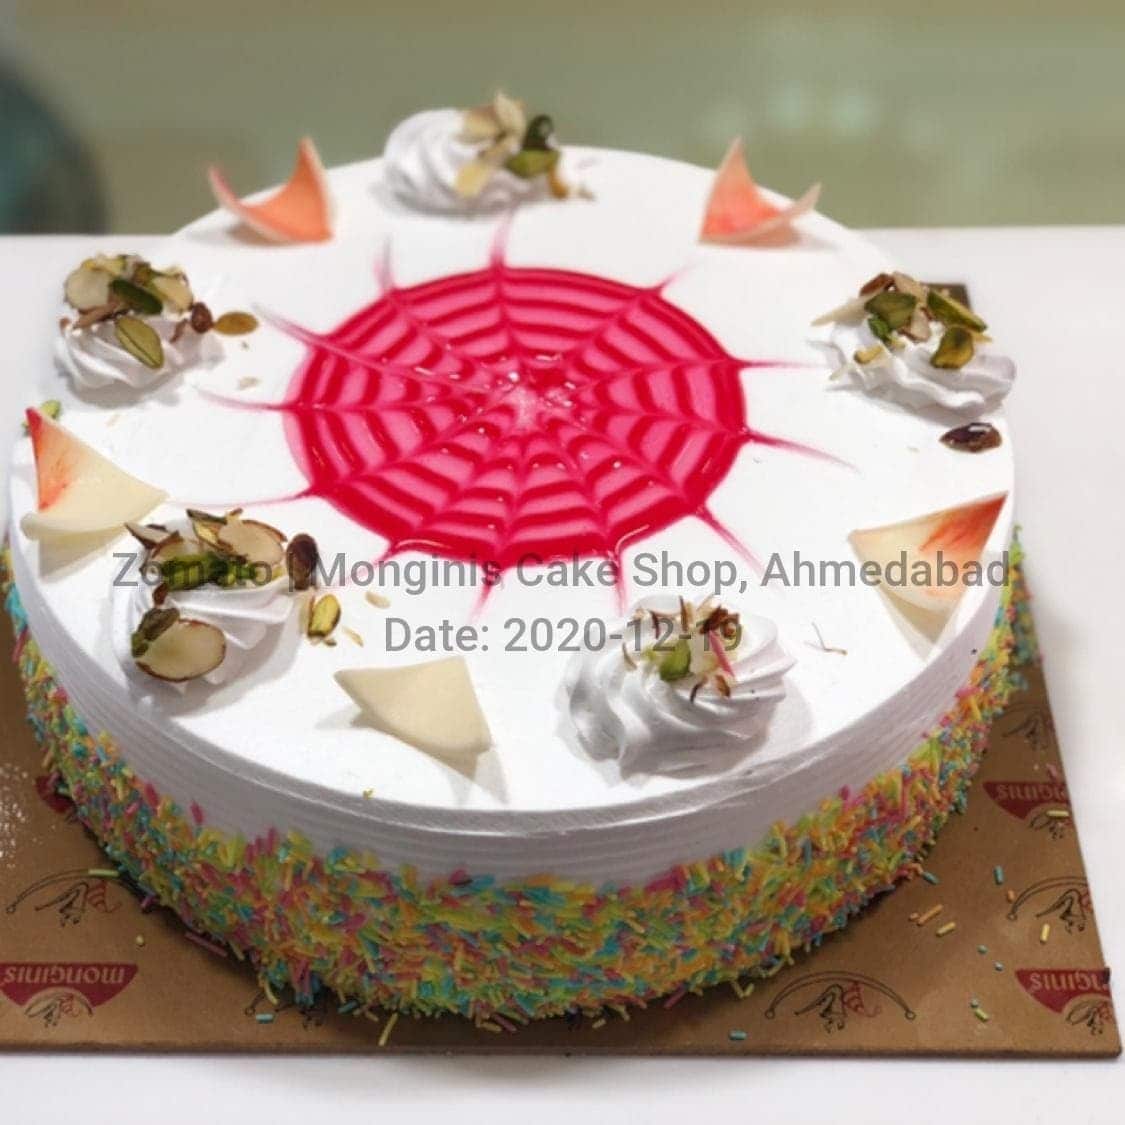 Monginis Cake Shop Shahibagh Order Online Zomato